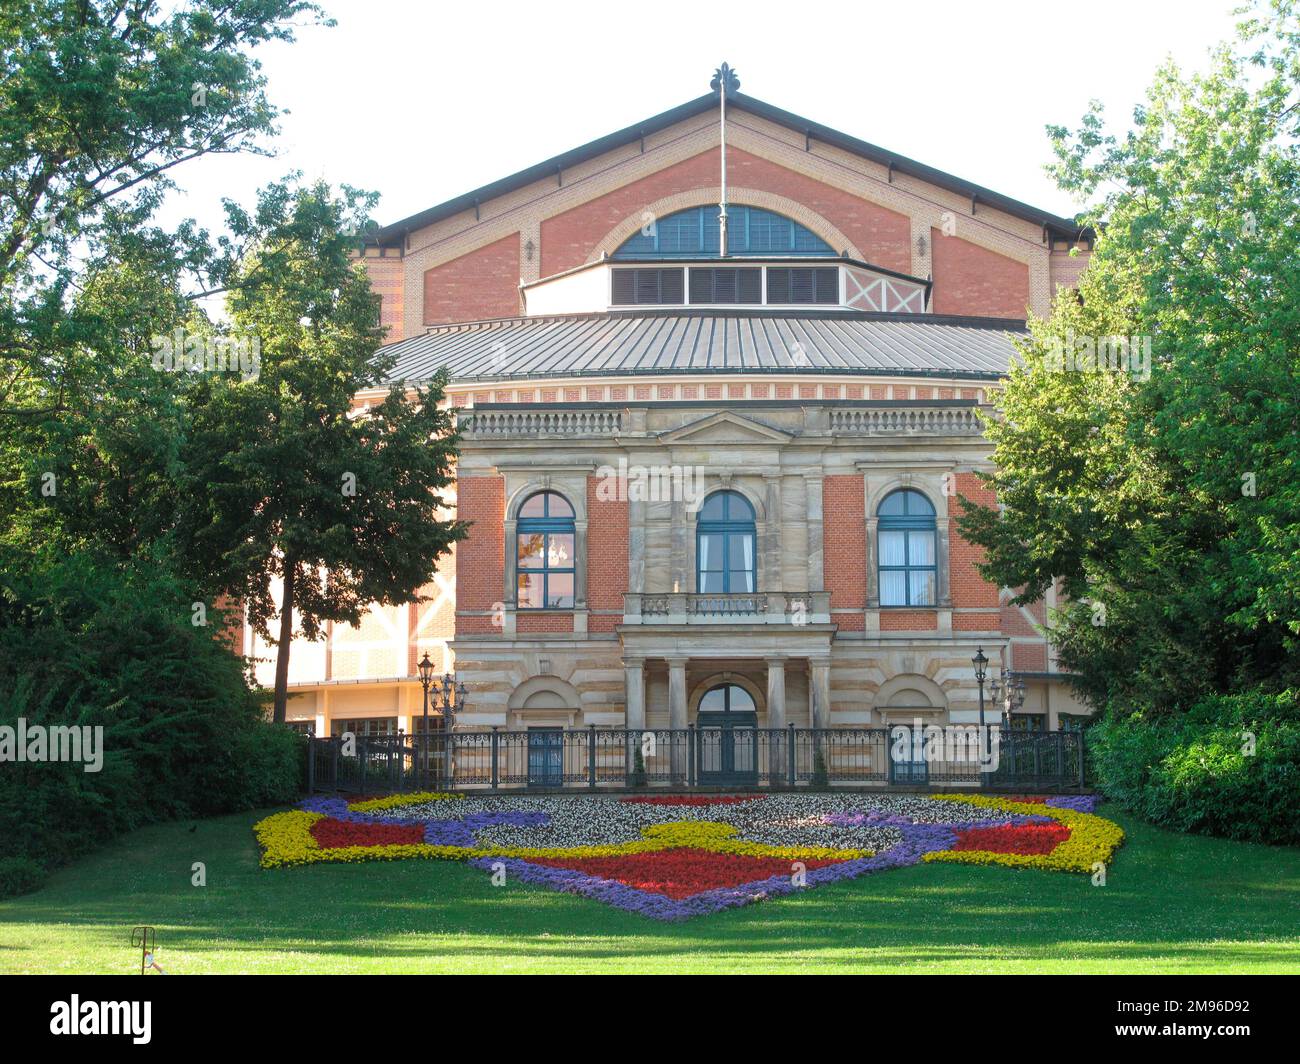 Vue extérieure du Bayreuth Festival Theatre (Festspielhaus) de Richard Wagner à Bayreuth, en Bavière, en Allemagne. Il a été construit au cours du 19th siècle, spécifiquement pour les productions des opéras de Wagner. Banque D'Images